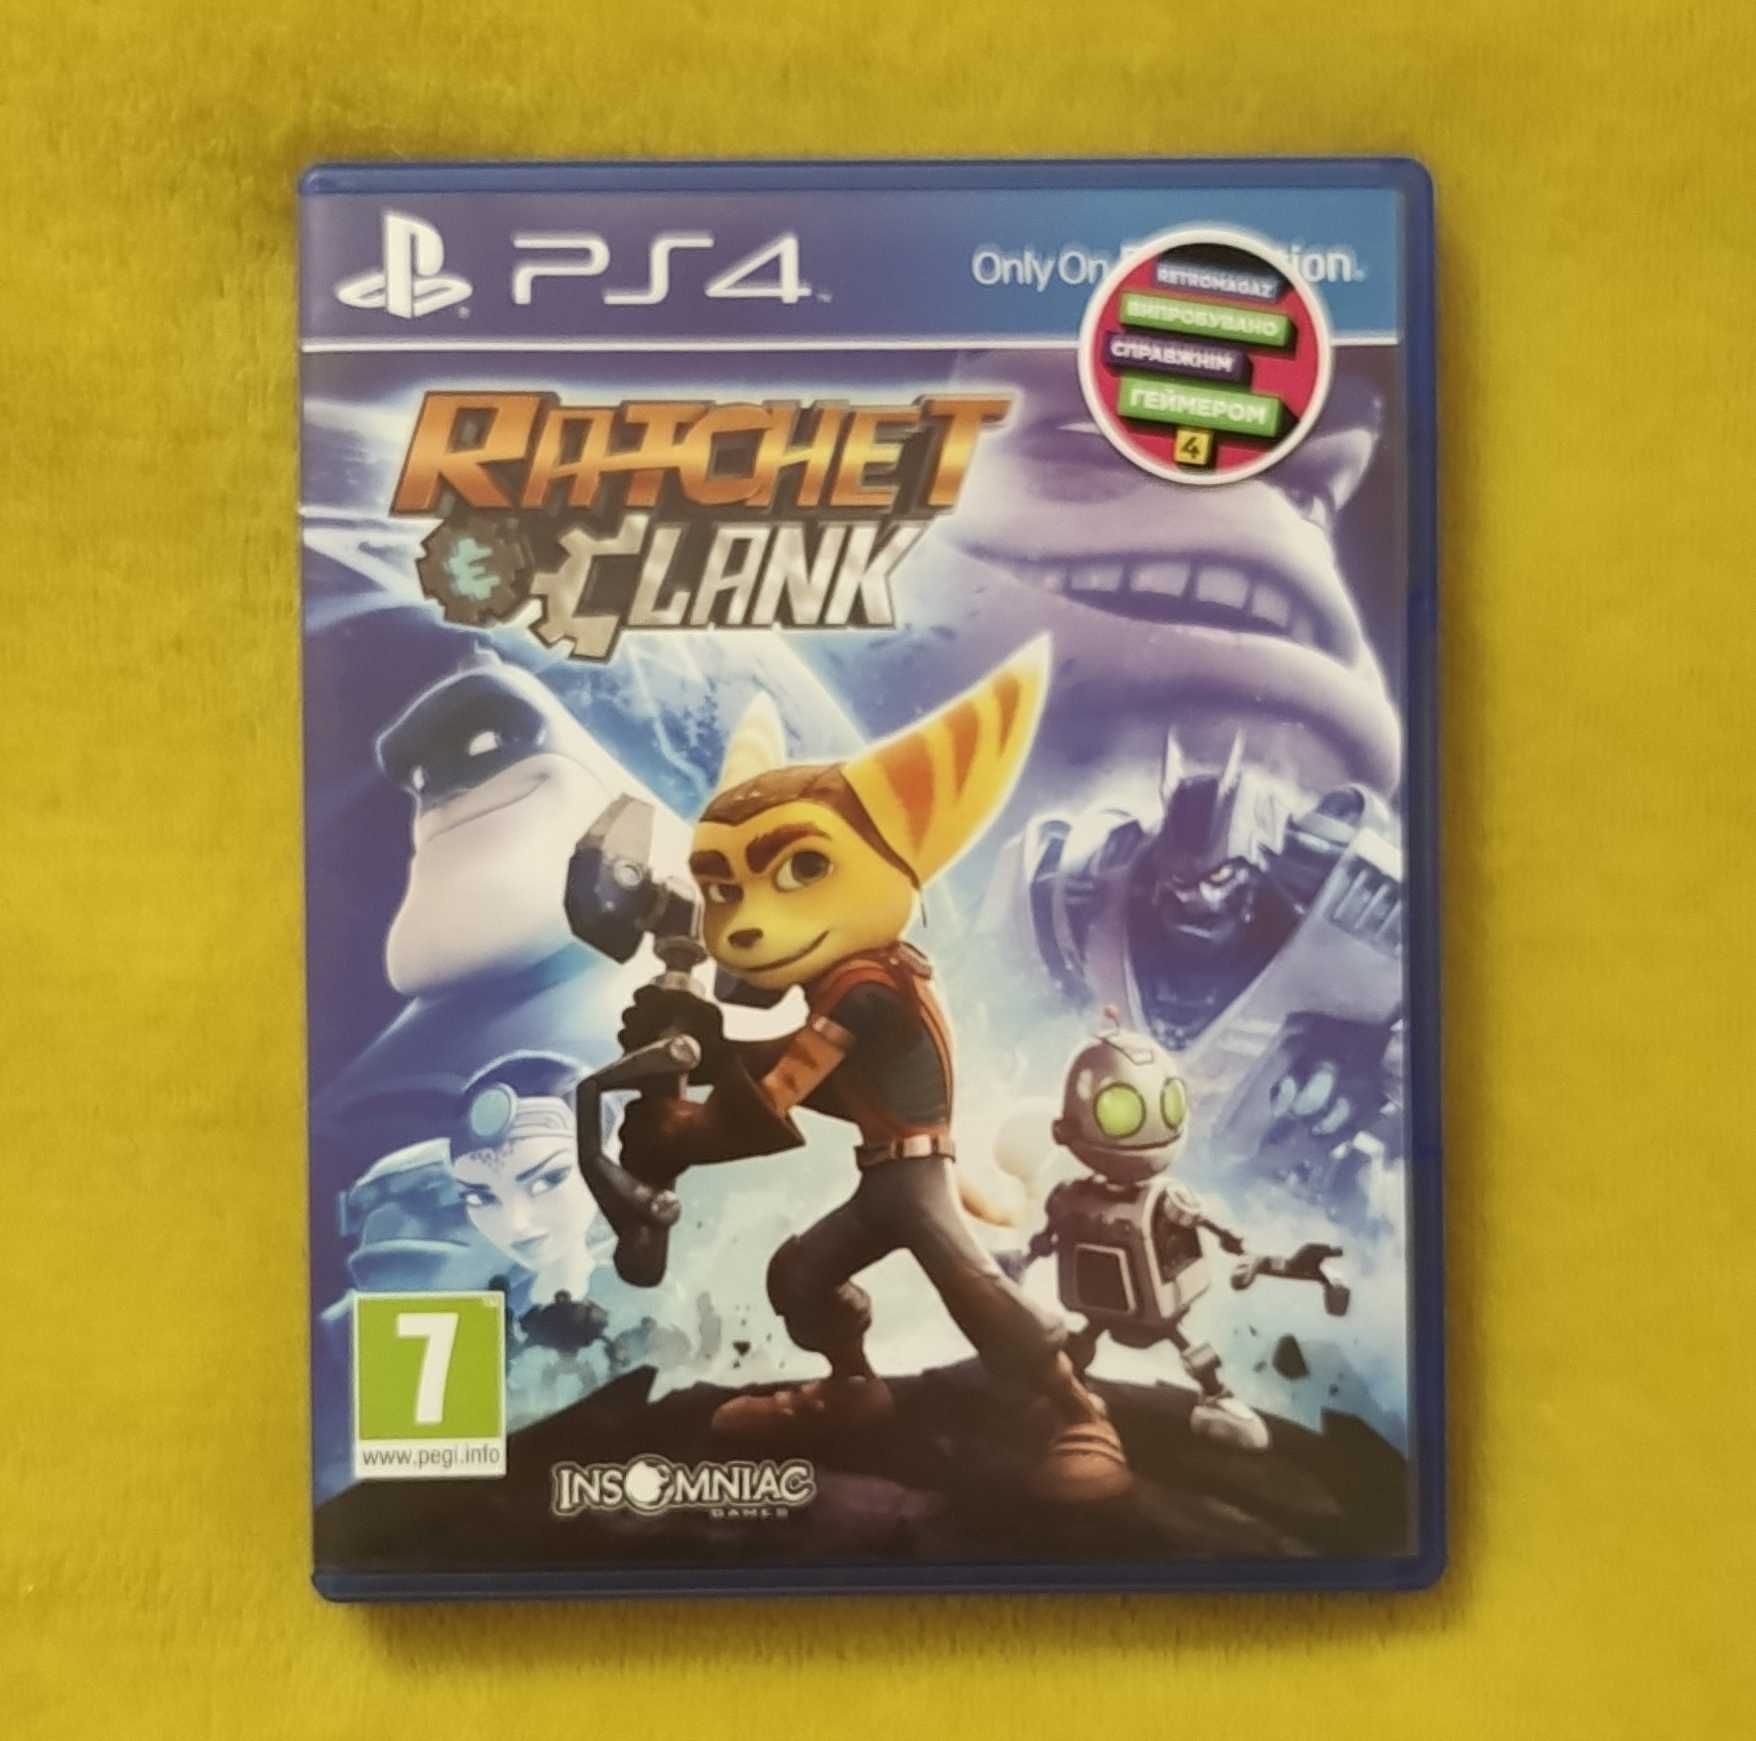 Гра "Ratchet & Clank" для PlayStation 4 в ідеальному стані